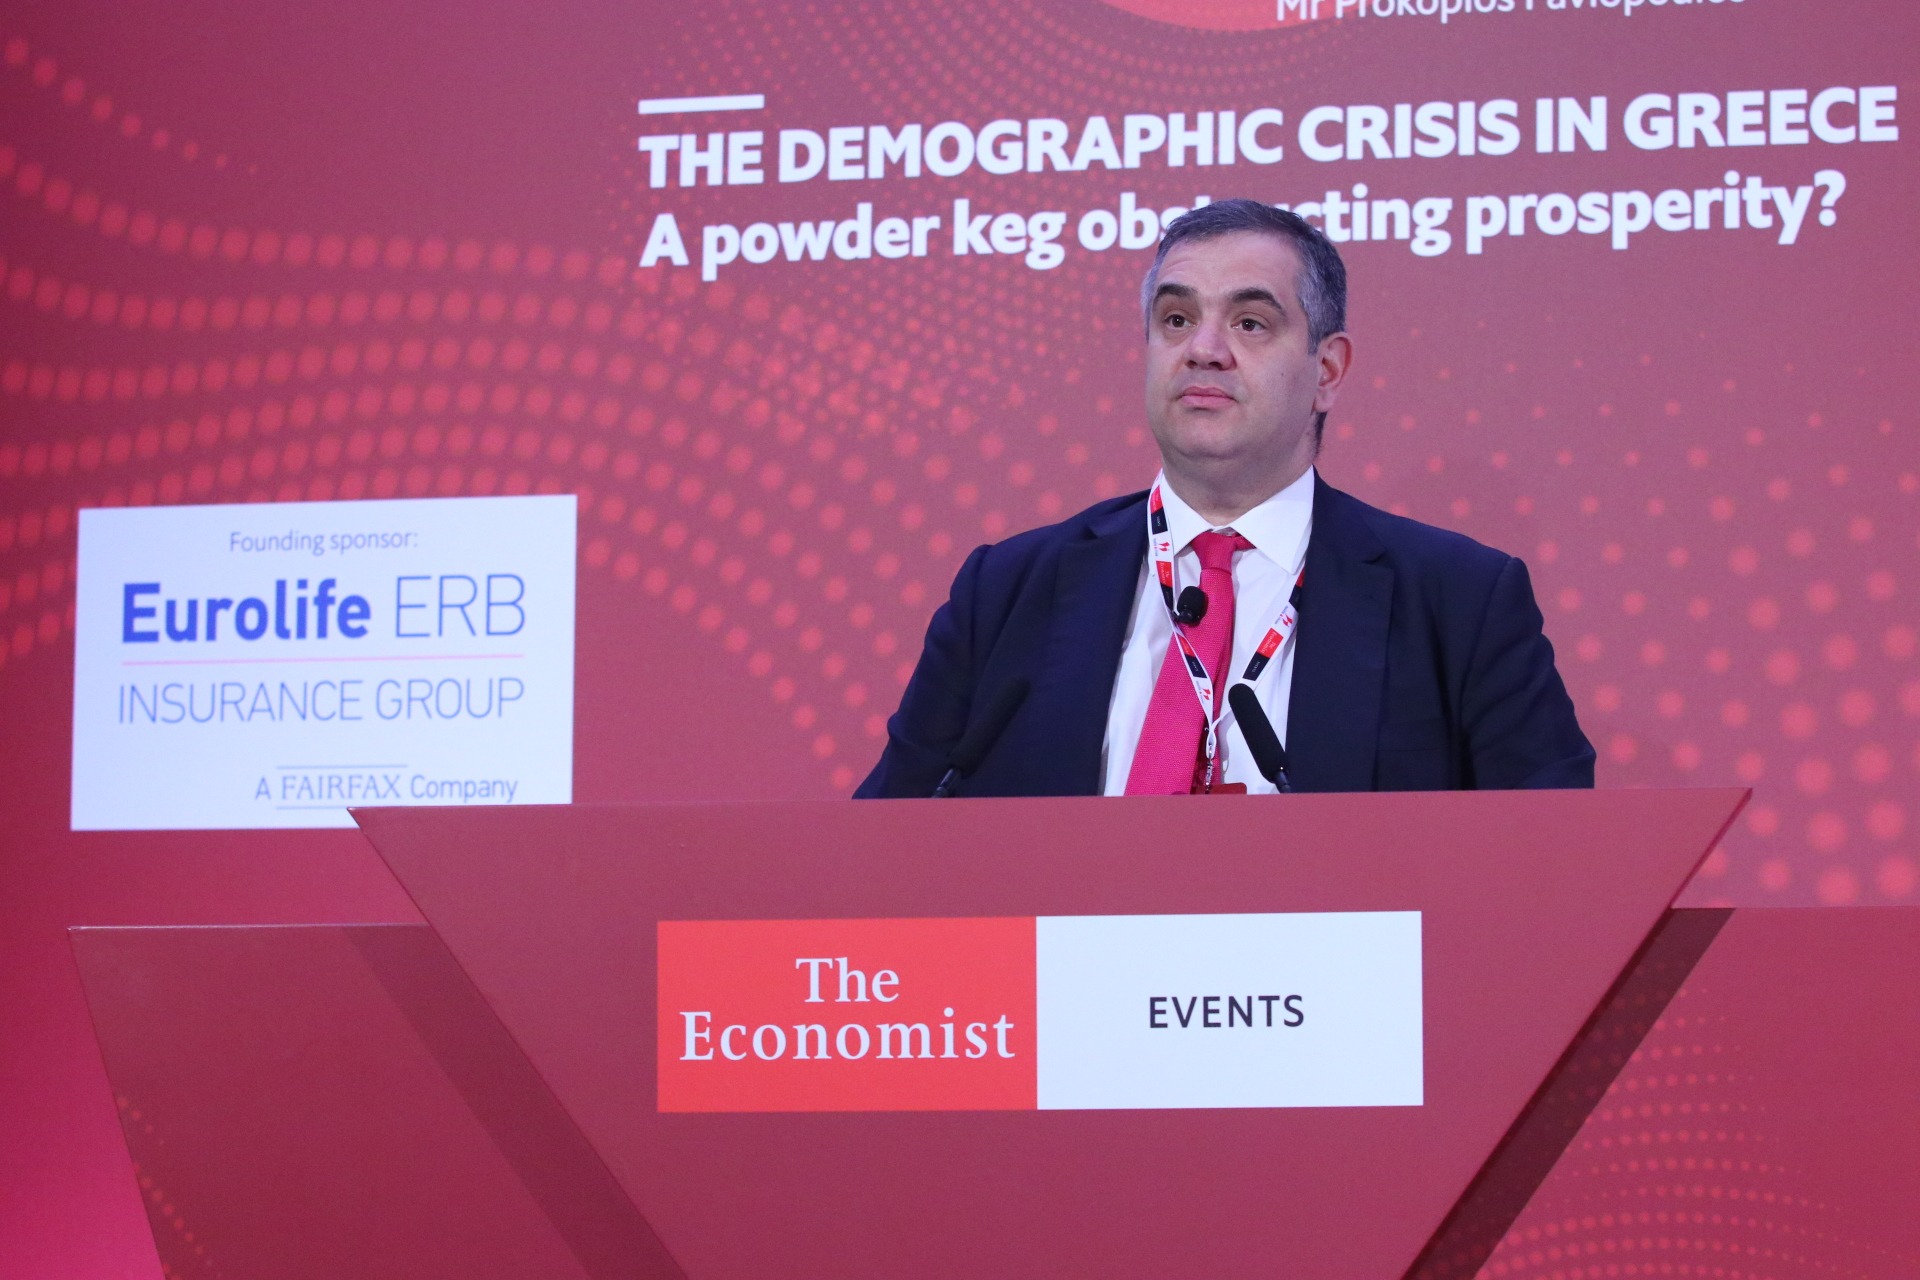 Βασίλης Σπανάκης: Ομιλία στο Διεθνές Συνέδριο του Economist